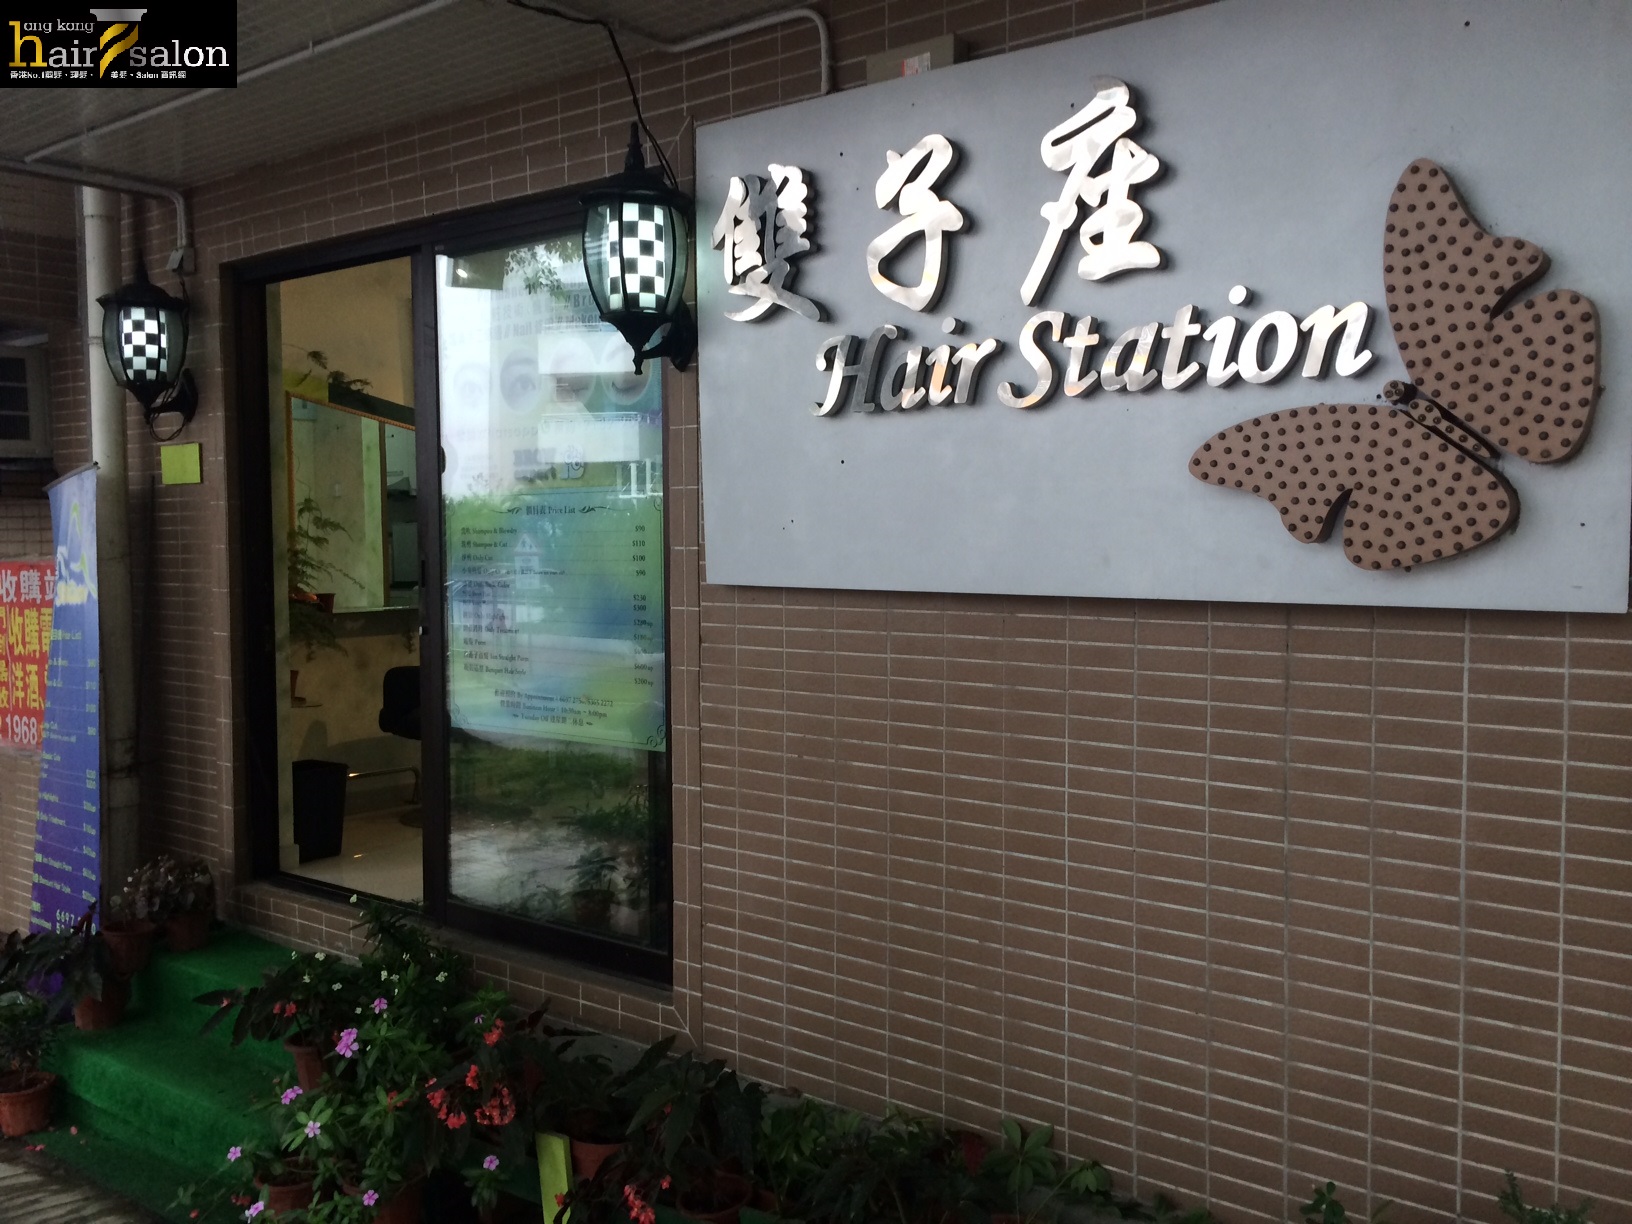 髮型屋: 雙子座 Hair Station (馬灣)